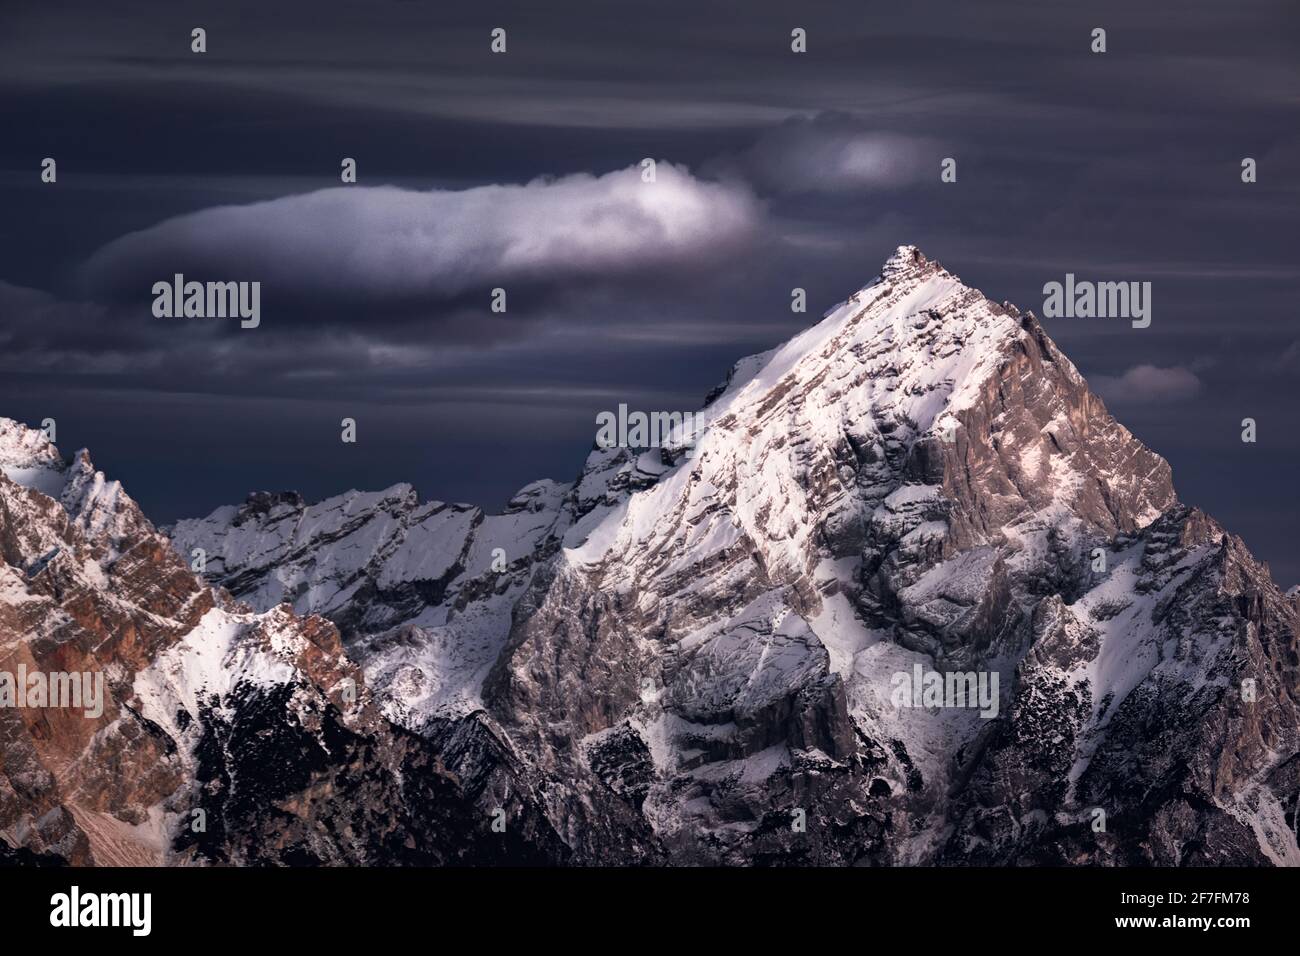 Montagne Antelao con neve e una nuvola solitaria, Dolomiti, Trentino-Alto Adige, Italia, Europa Foto Stock